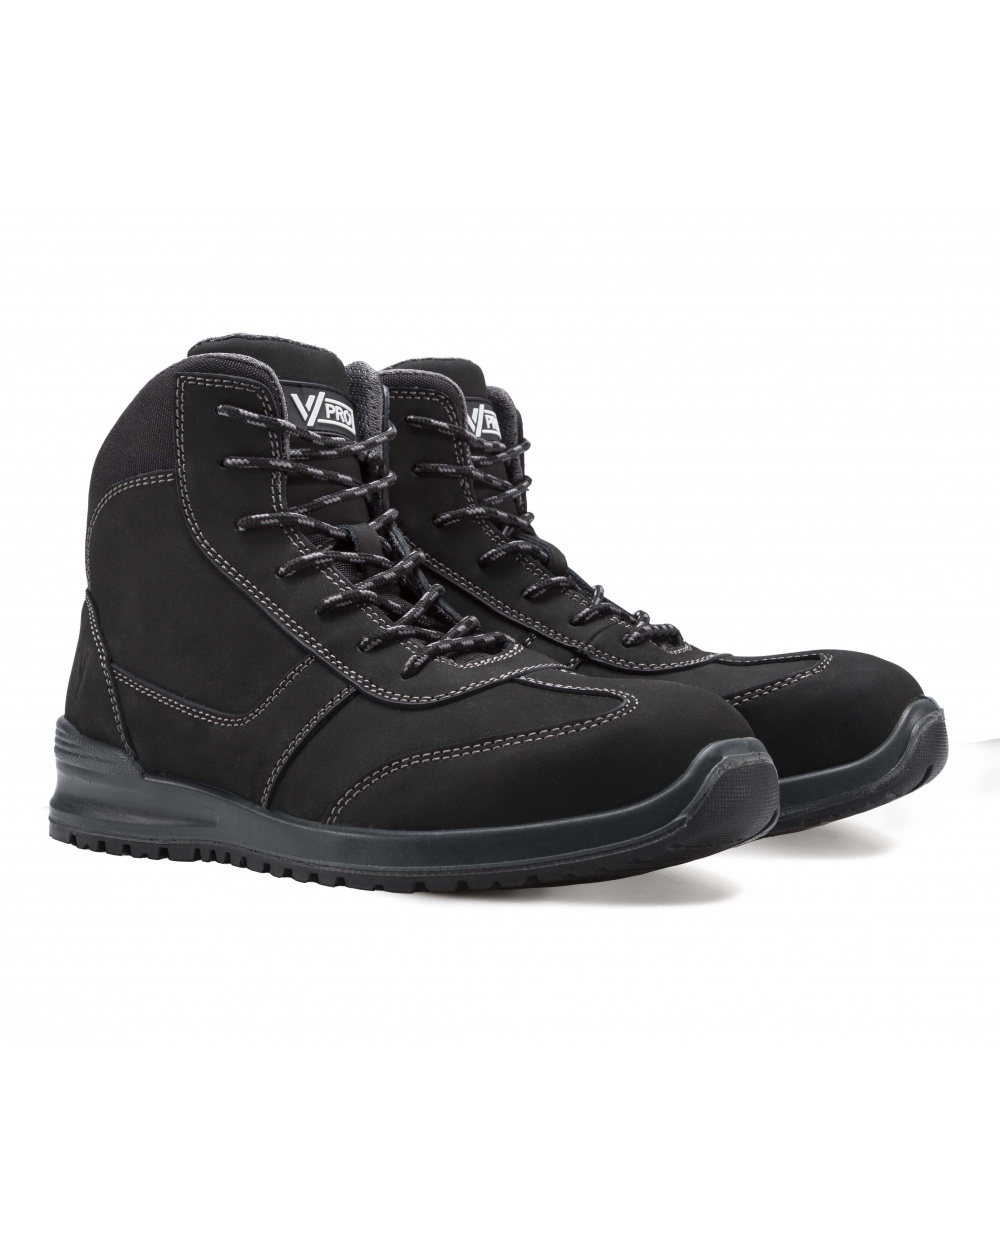 Comprar Zapato de seguridad metal free serie 707005 online barato